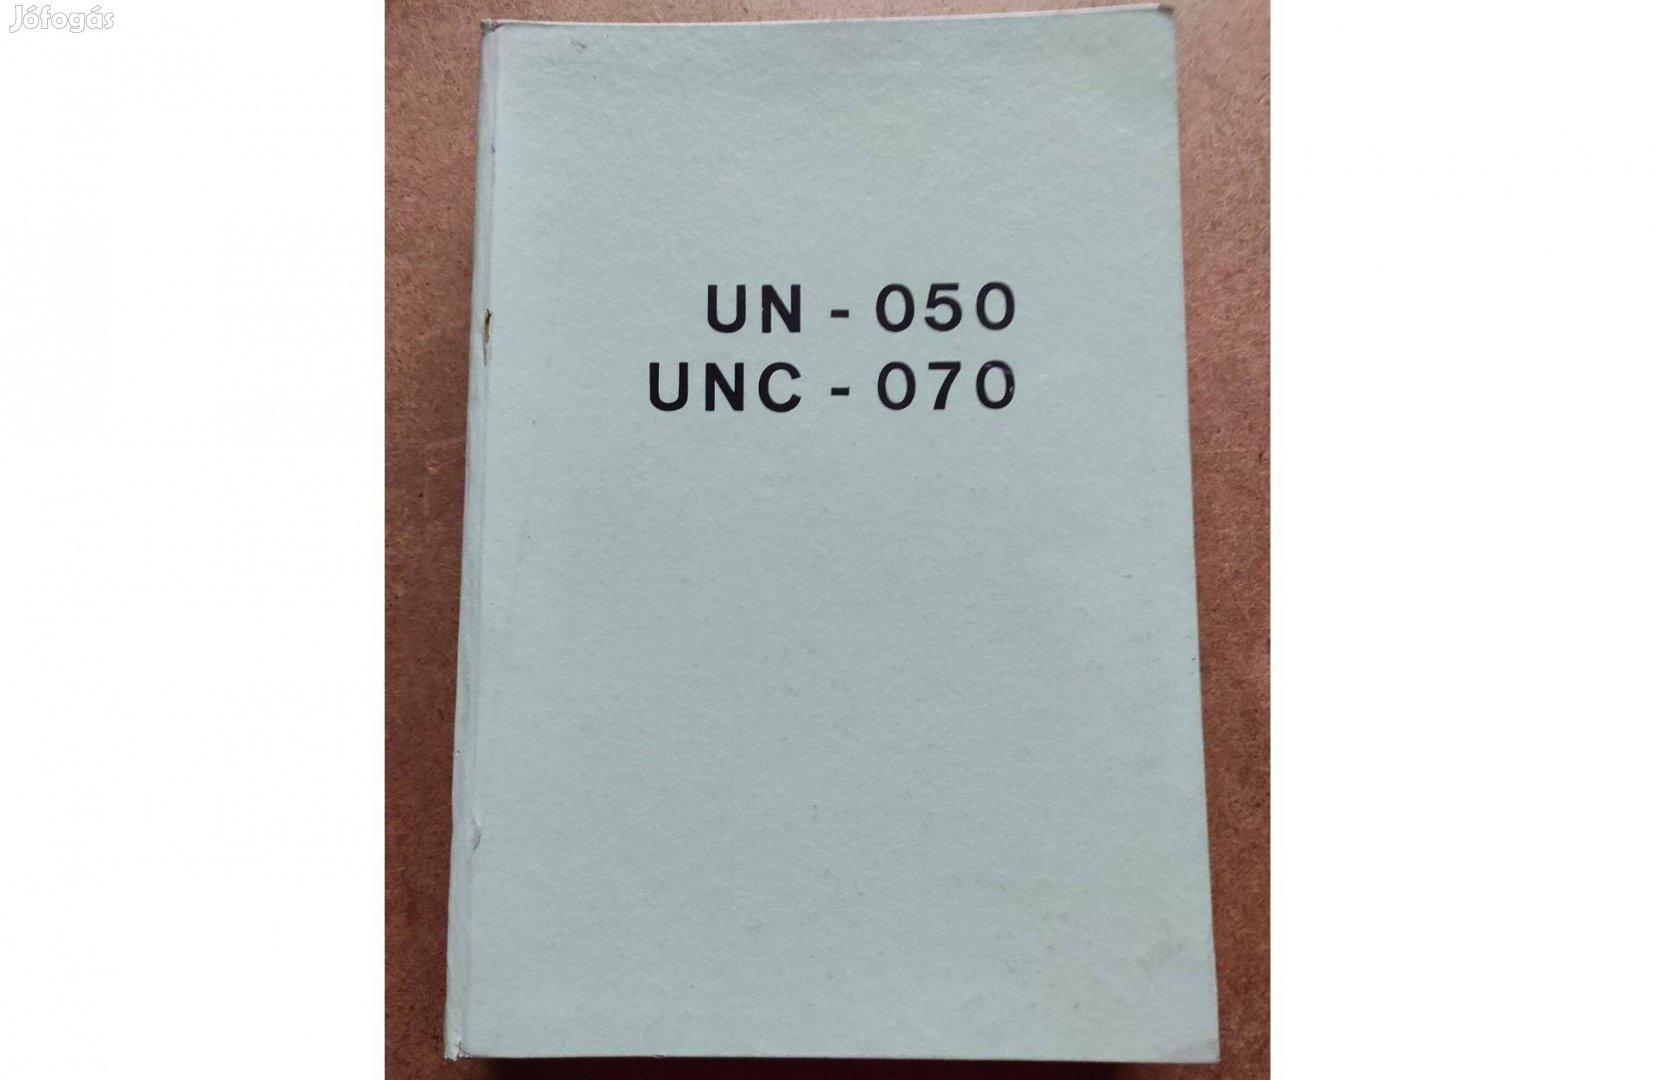 UN - 050 és UNC - 070 homlokrakodó alkatrészkatalógus